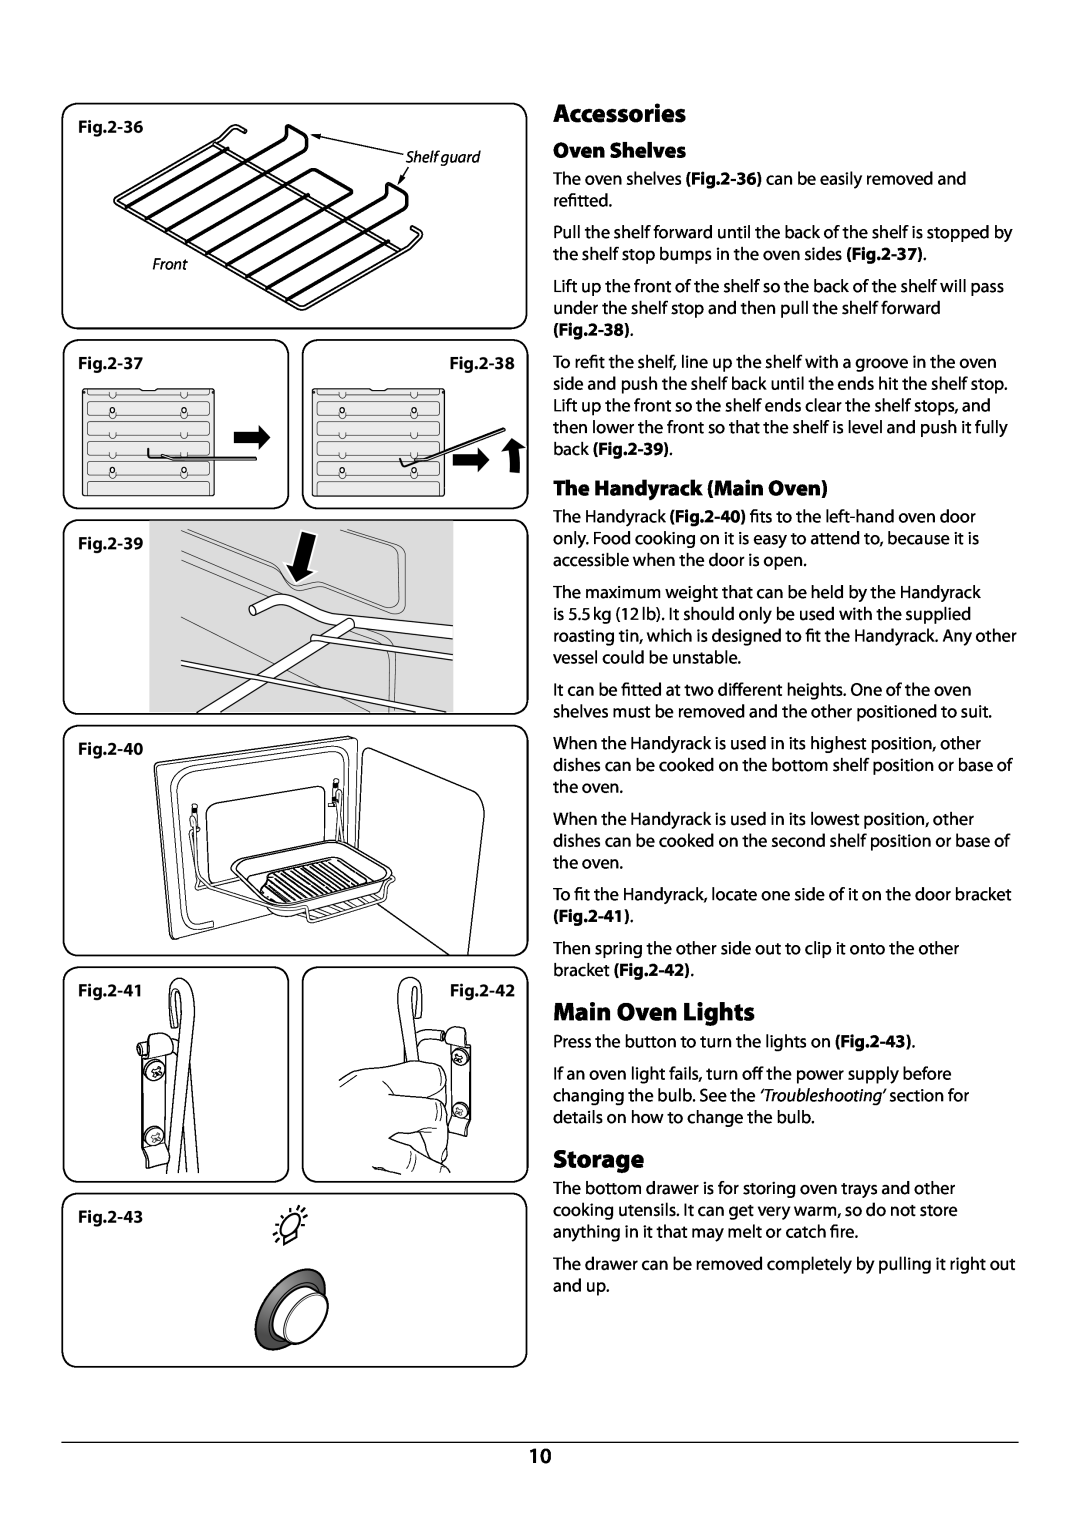 JVC toledo installation instructions Oven Shelves, The Handyrack Main Oven, 36, 39 -40 